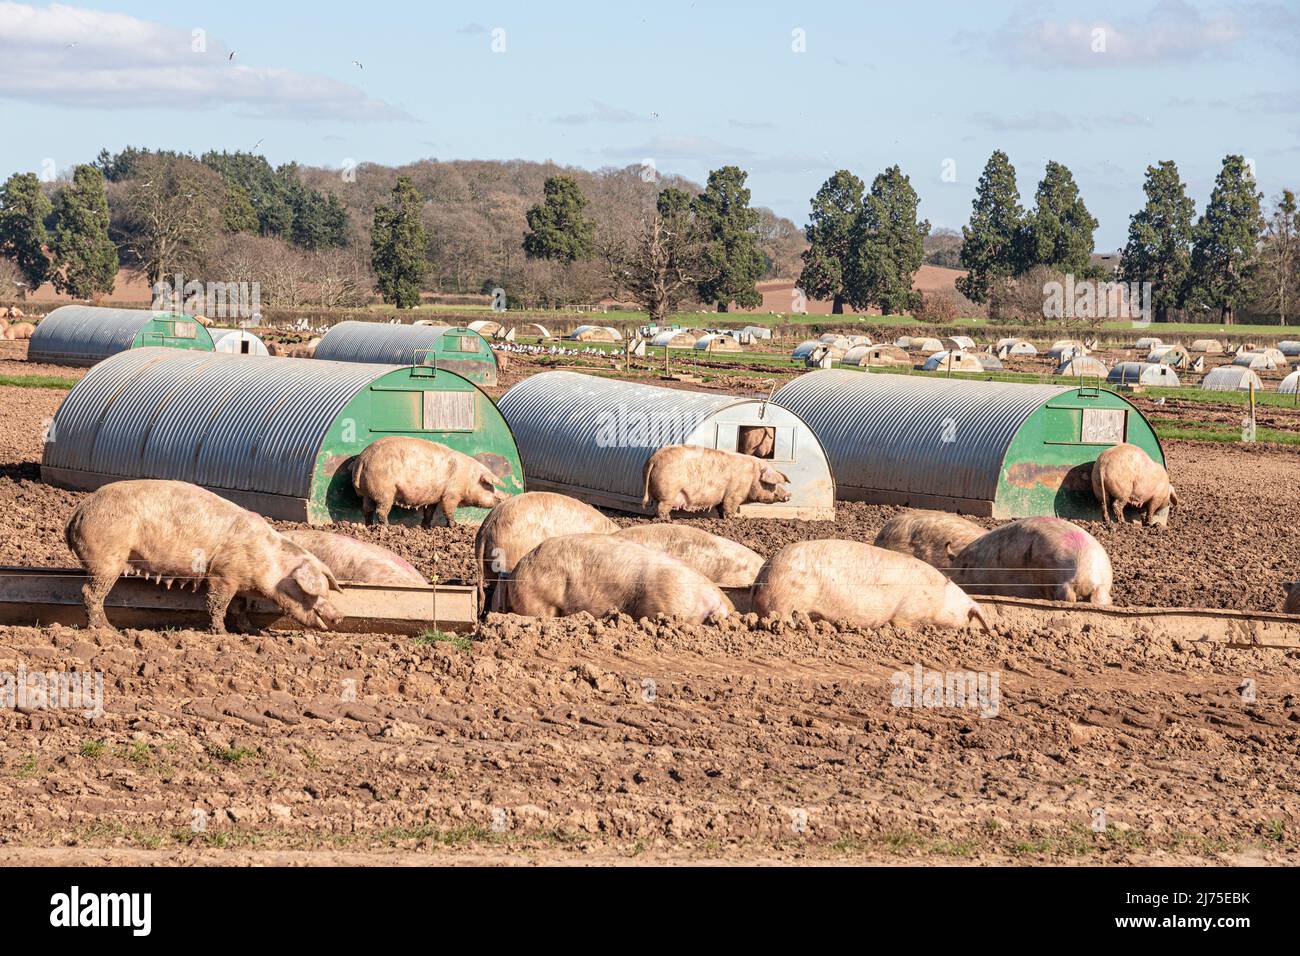 Cría de cerdos al aire libre de alta densidad en escobas Green en la frontera de Gloucestershire - Herefordshire, Inglaterra Reino Unido Foto de stock